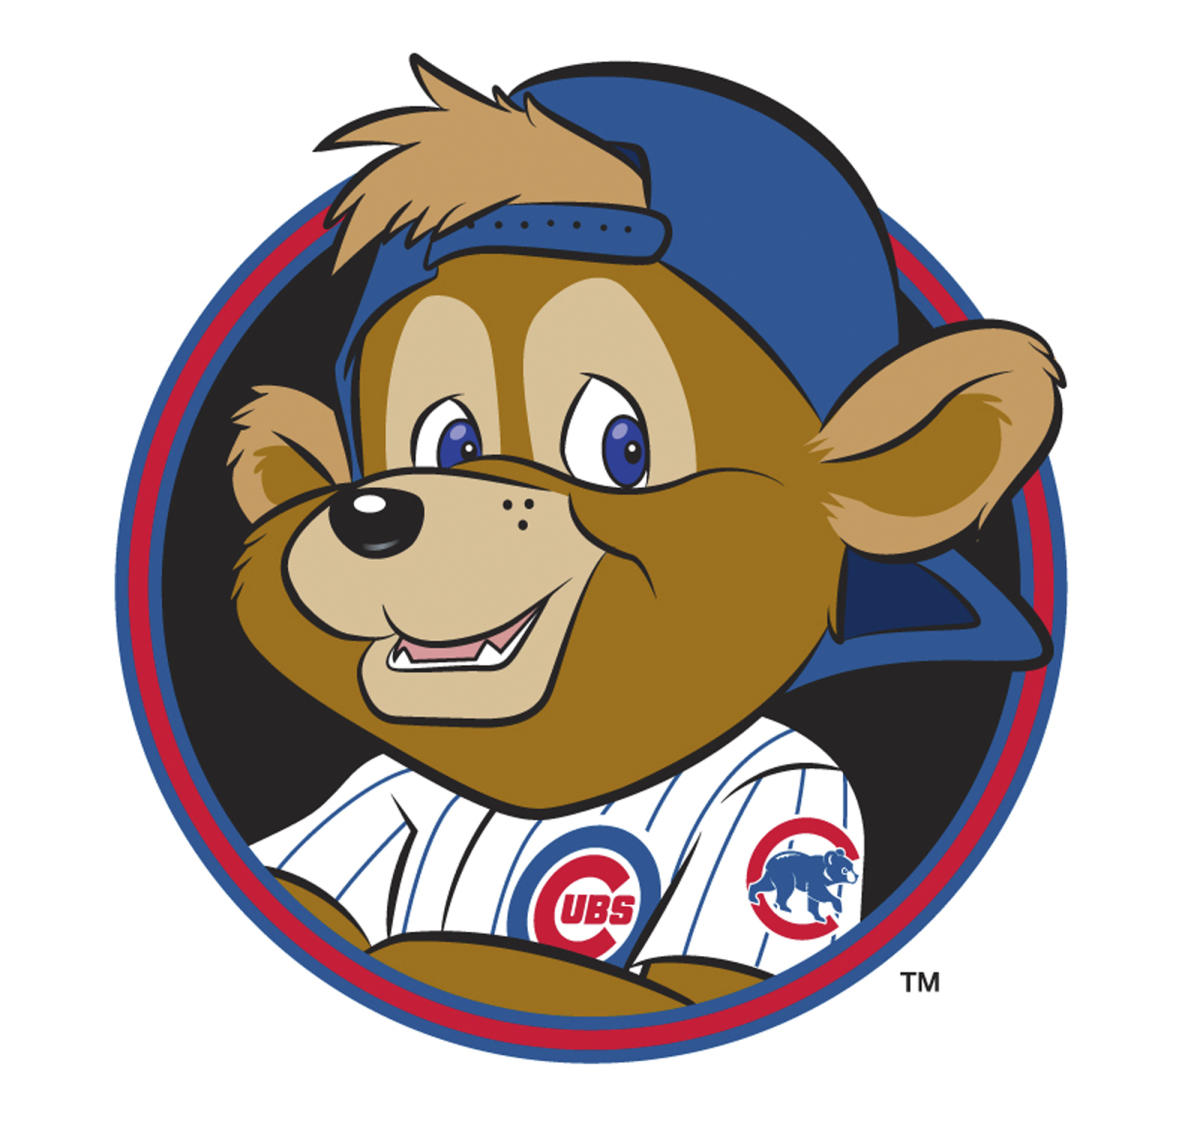 Chicago Cubs unveil Clark, its 1st mascot